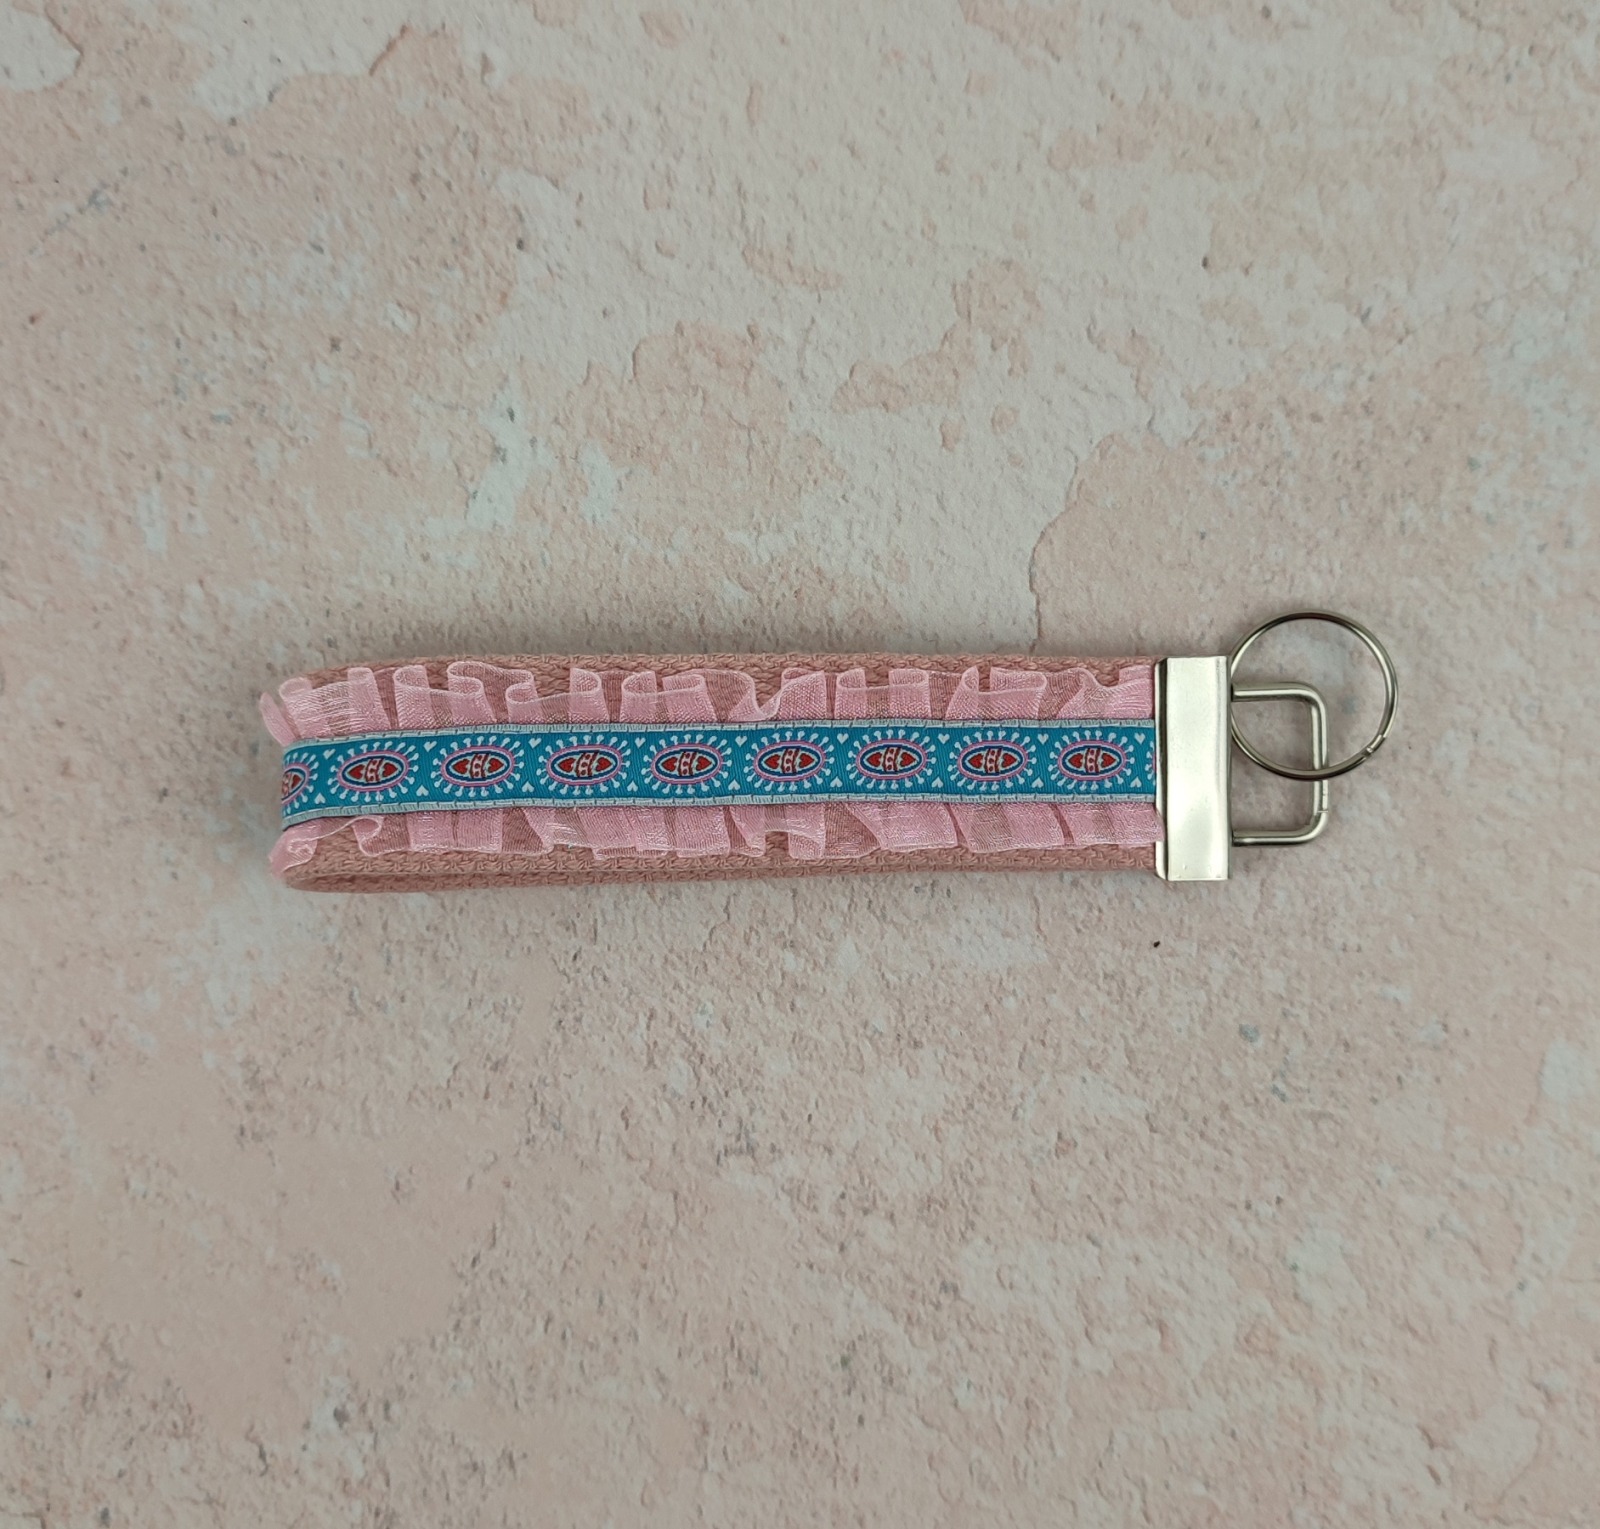 Kurzes Schlüsselband aus Gurtband in rosa - verziert mit Rüschen und Webband in petrol mit kleinen Herzchen 4